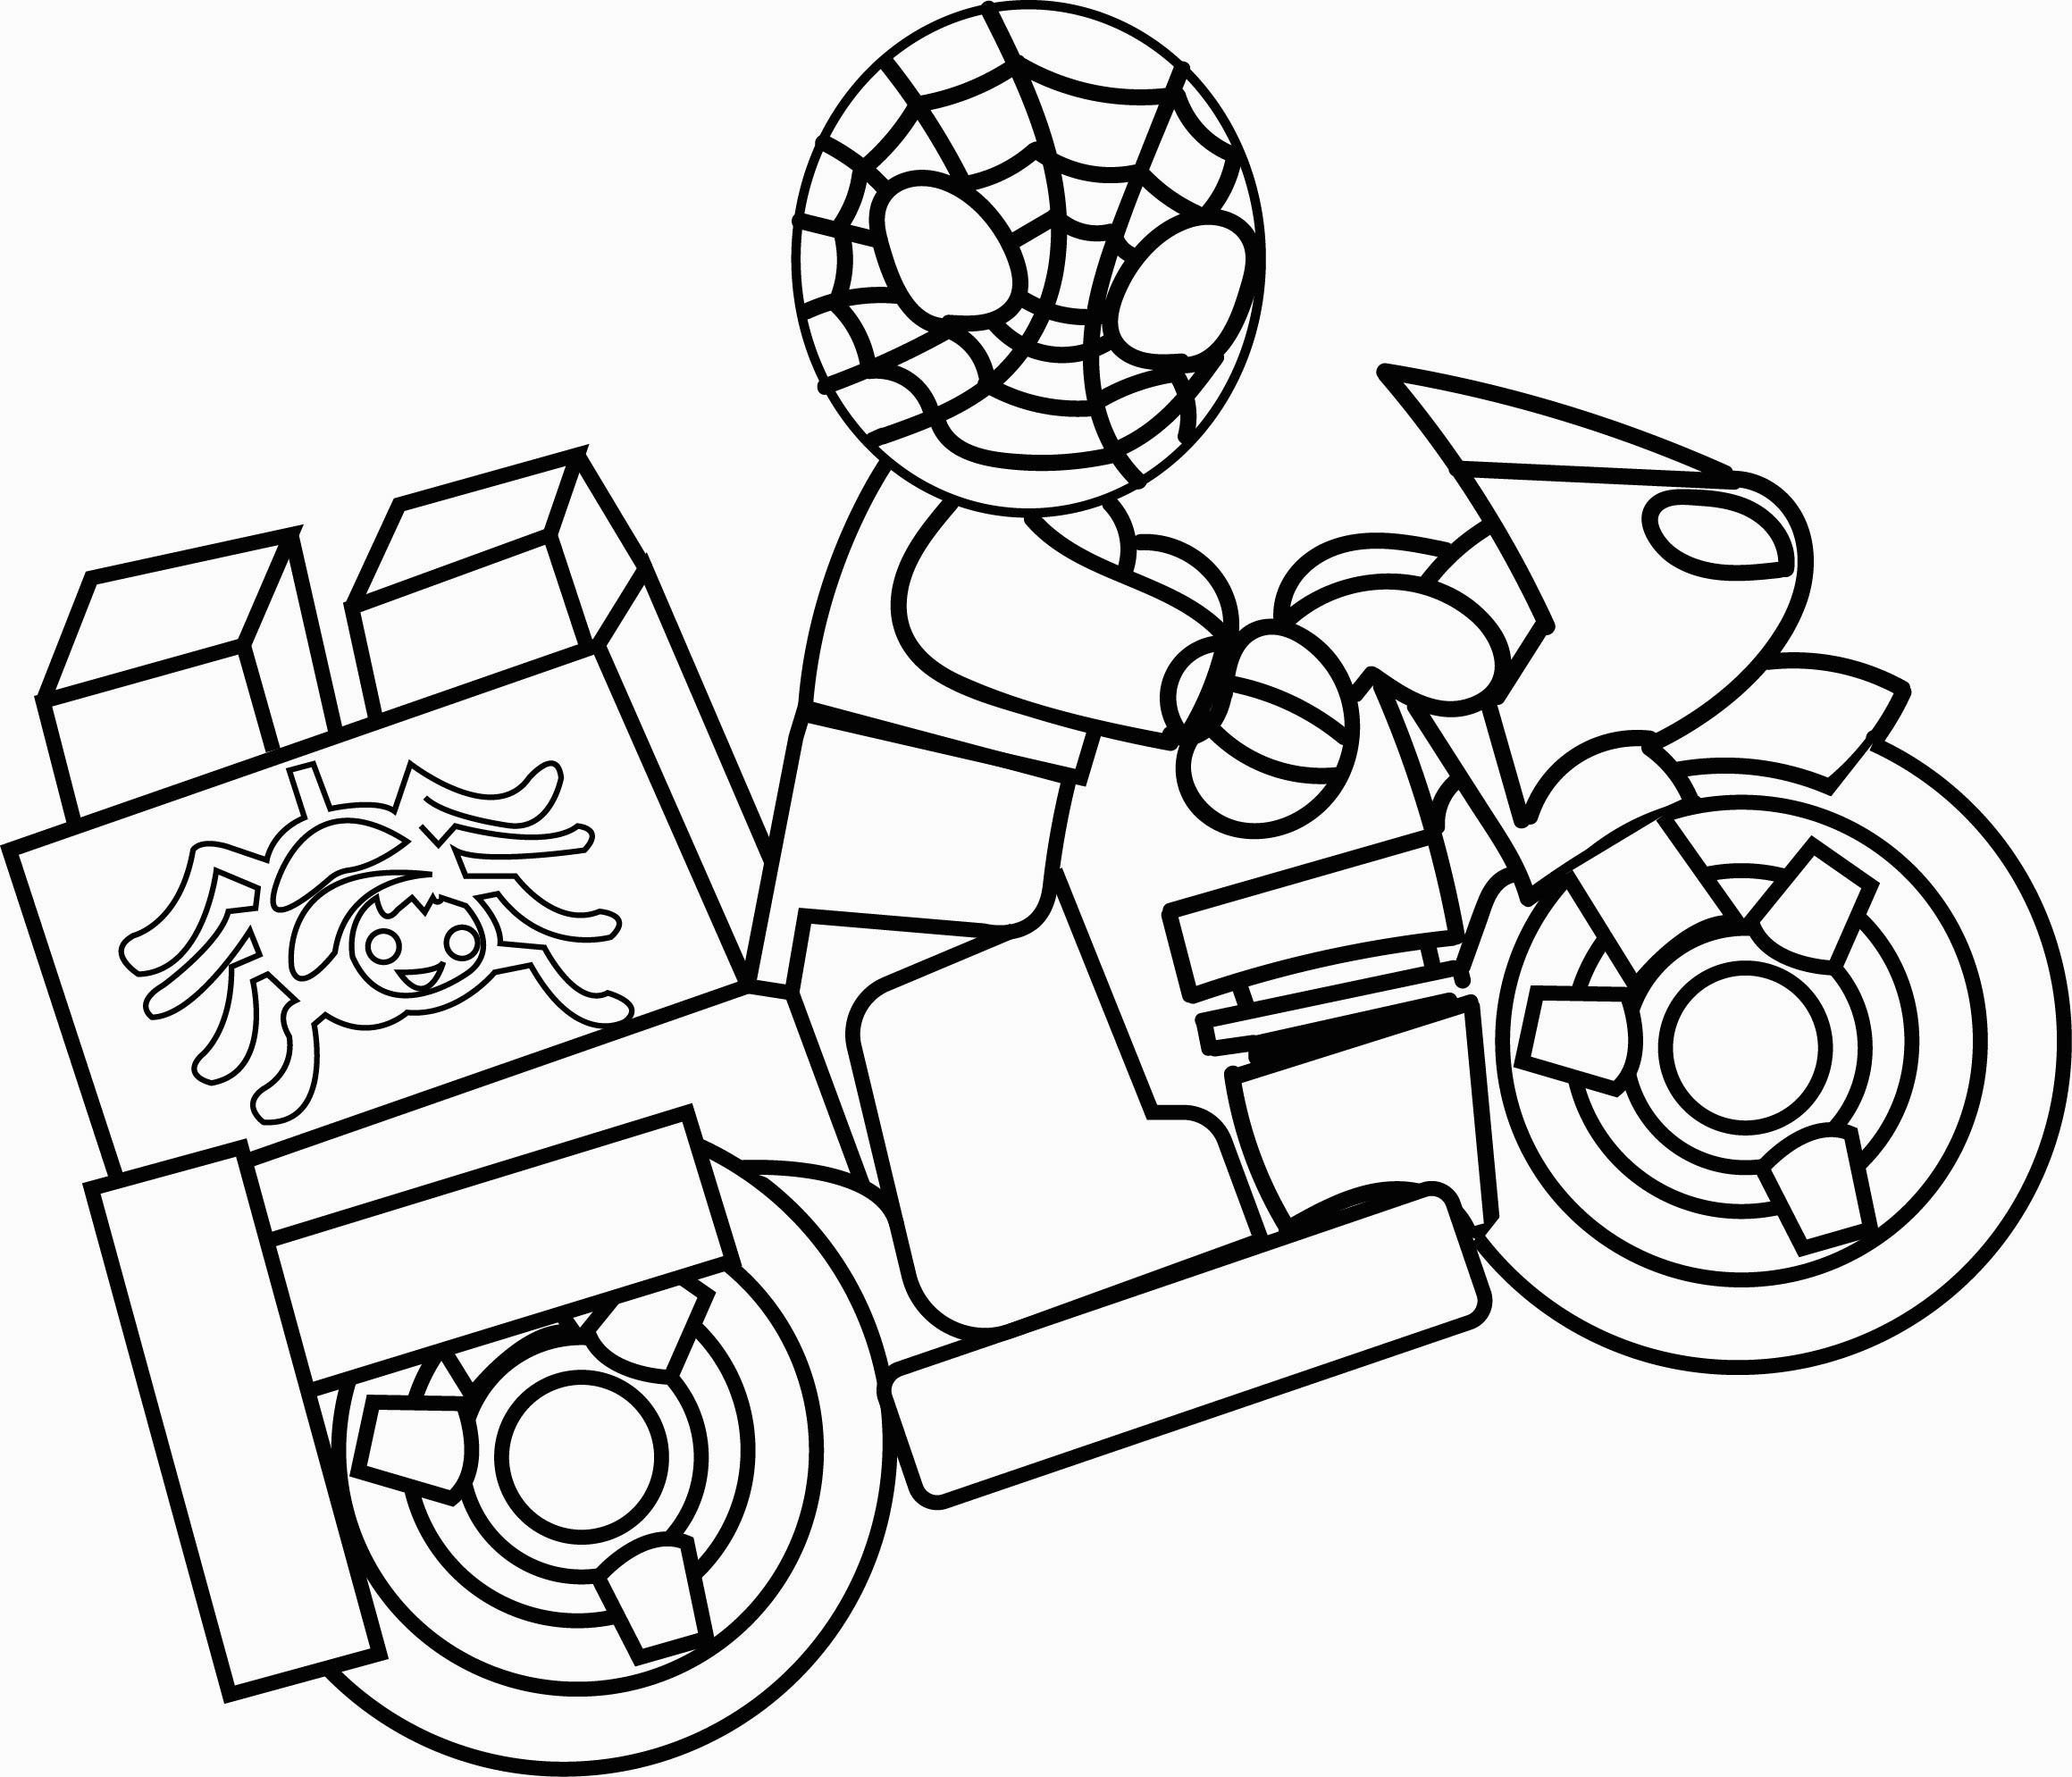 Trang tô màu người nhện và mô tô Lego